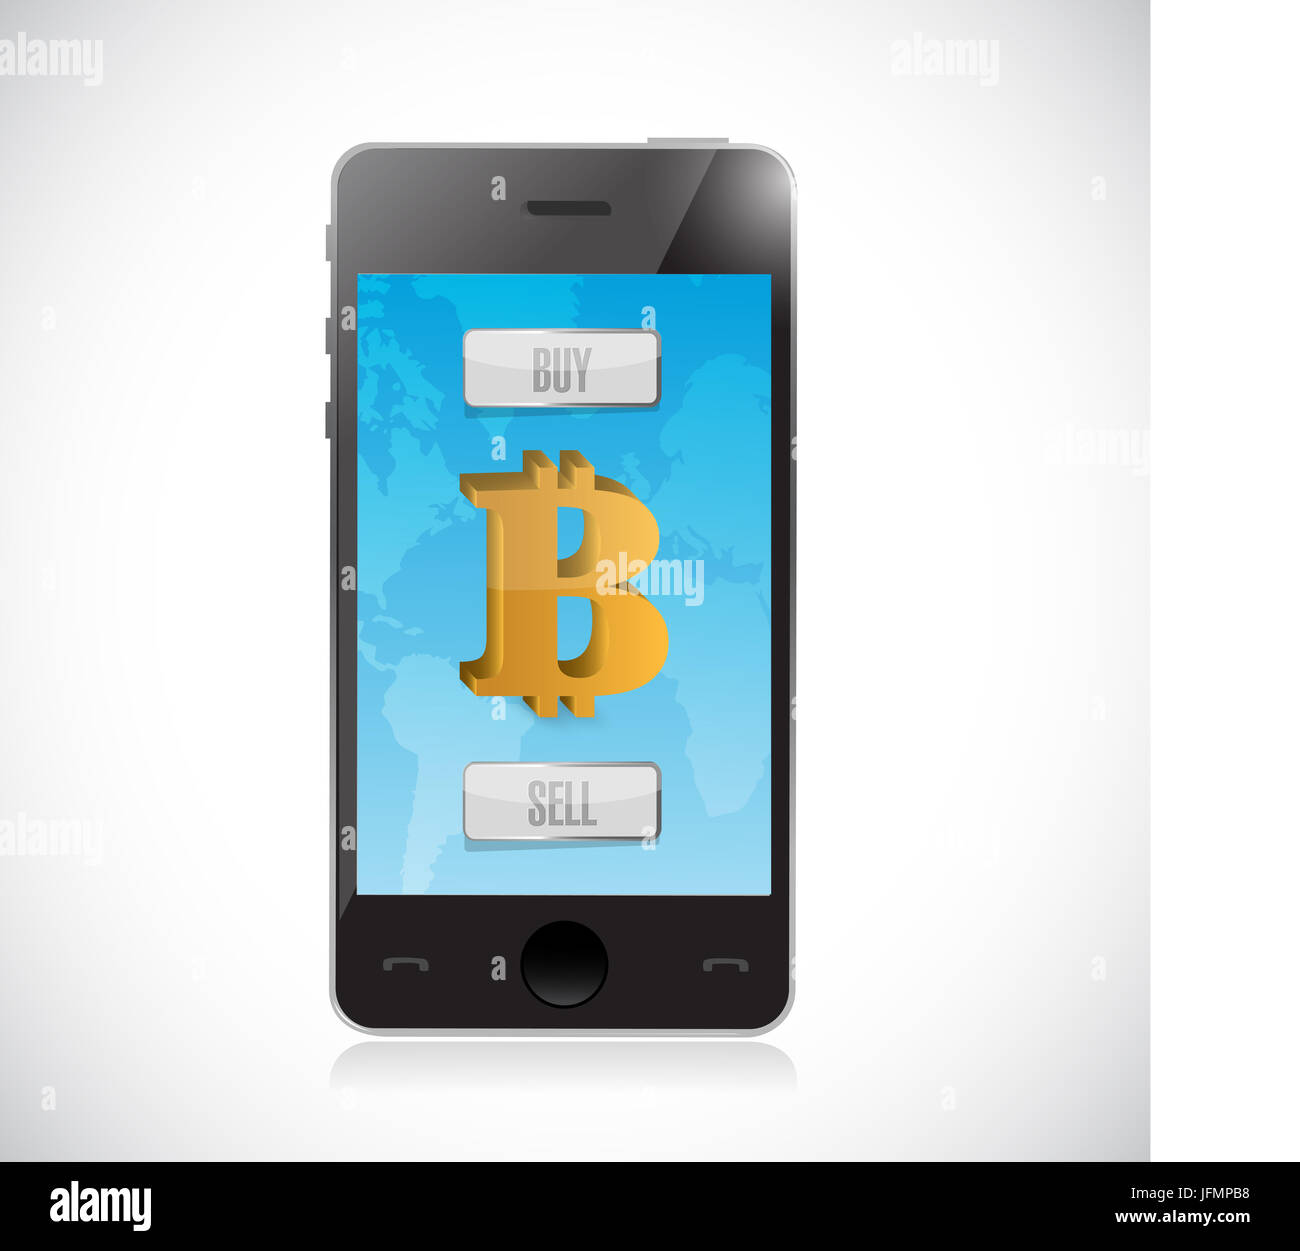 kaufen Sie oder verkaufen Sie Bitcoin Währung mit Smartphone. Forex Markt Illustration design Stockfoto